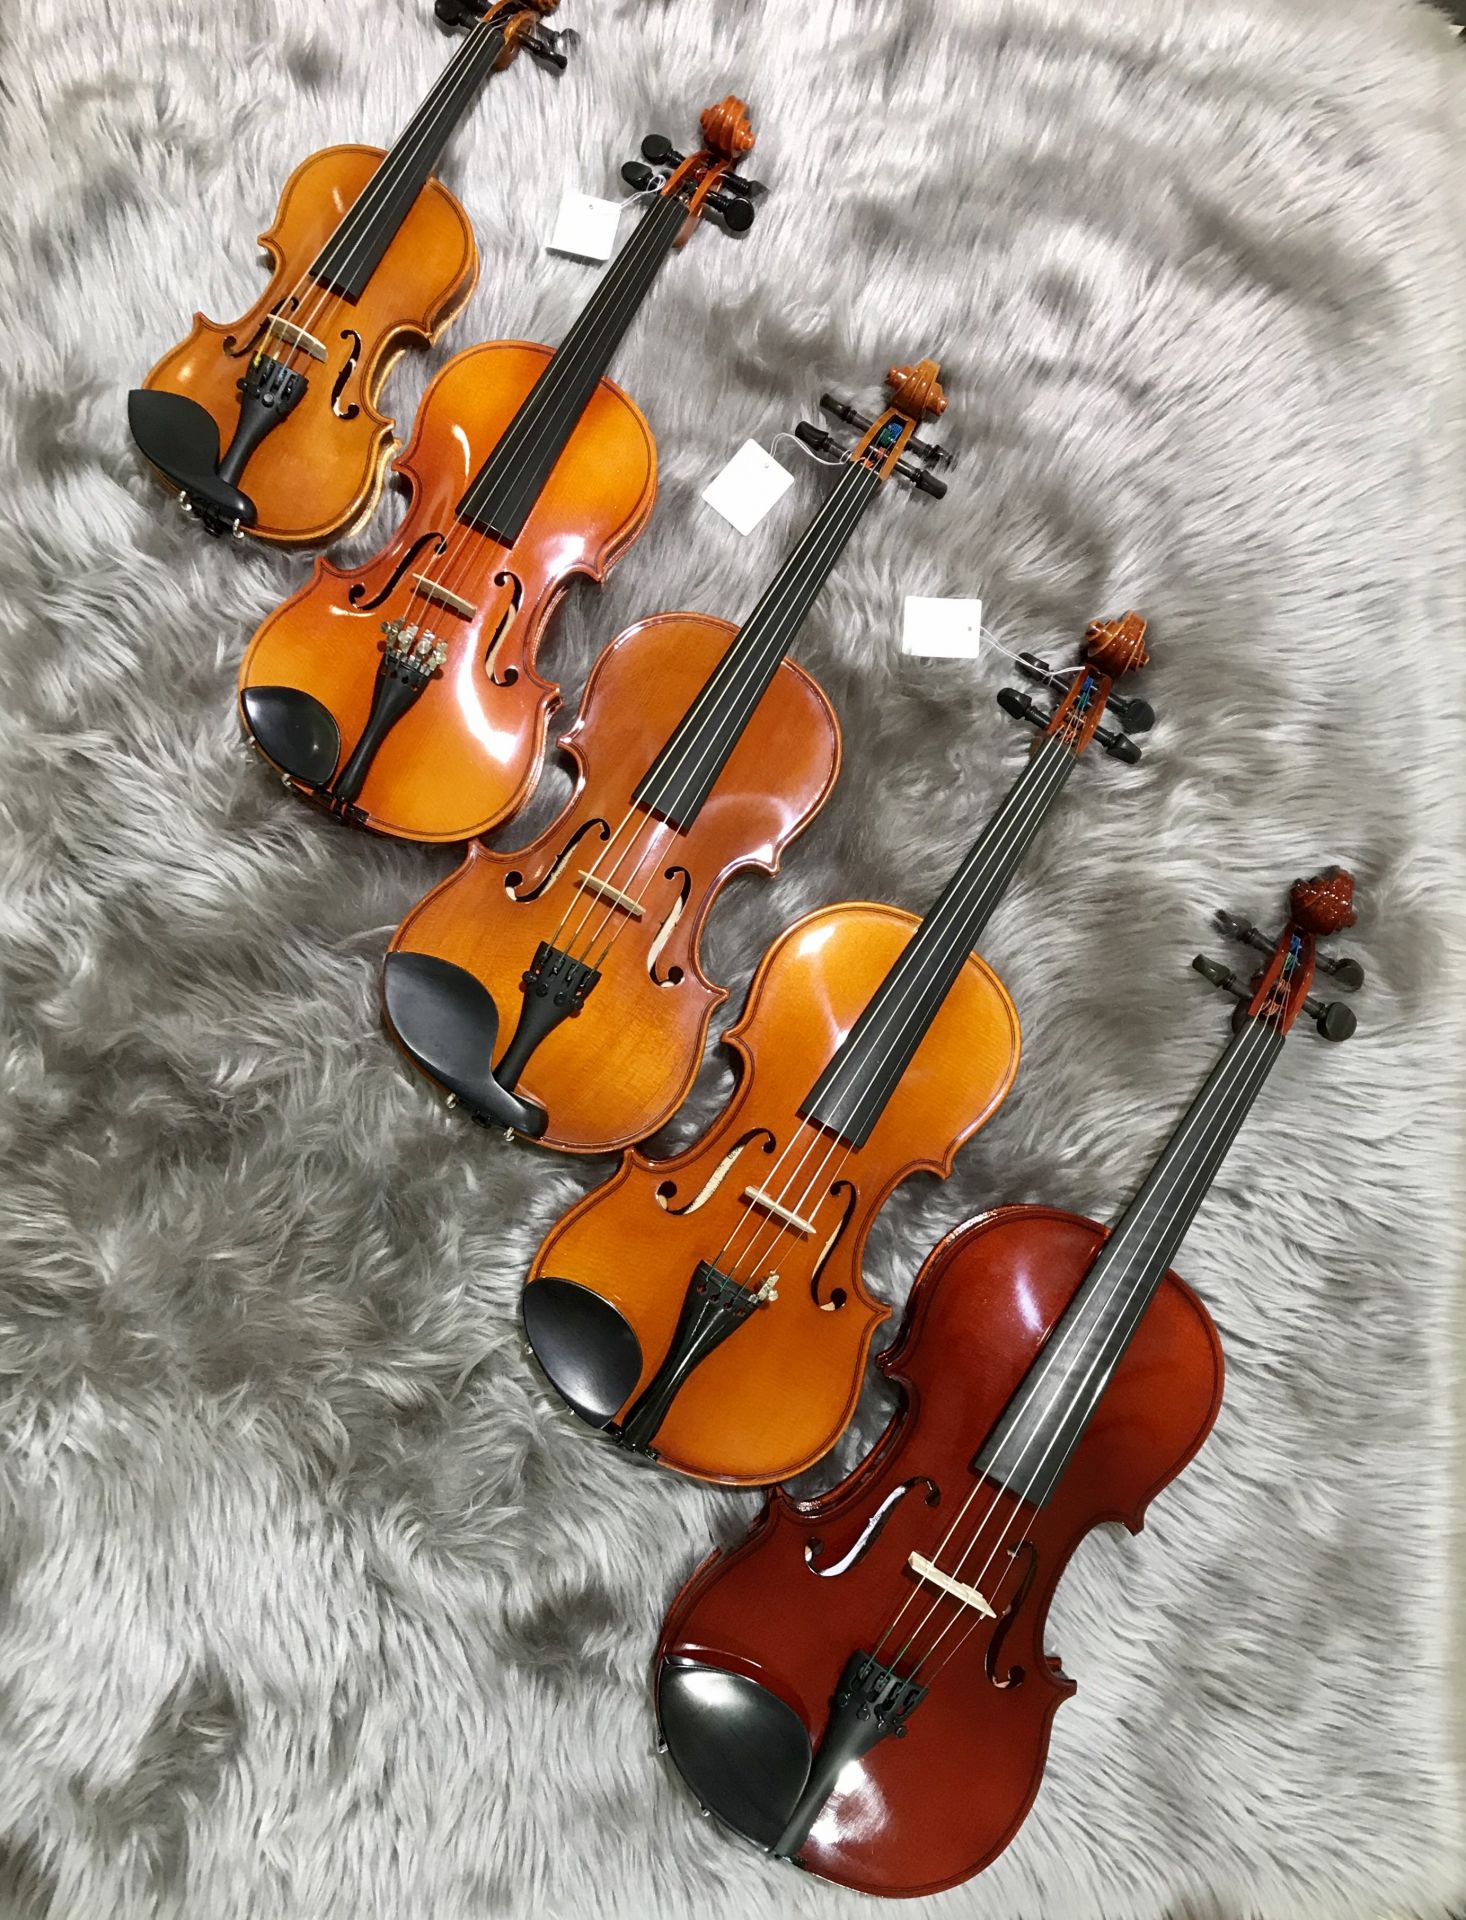 バイオリン 21年最新比較 初めての子供用の分数バイオリン 失敗しない選び方 8つのポイントまとめました おすすめ定番機種展示中 島村楽器 イオンモール甲府昭和店